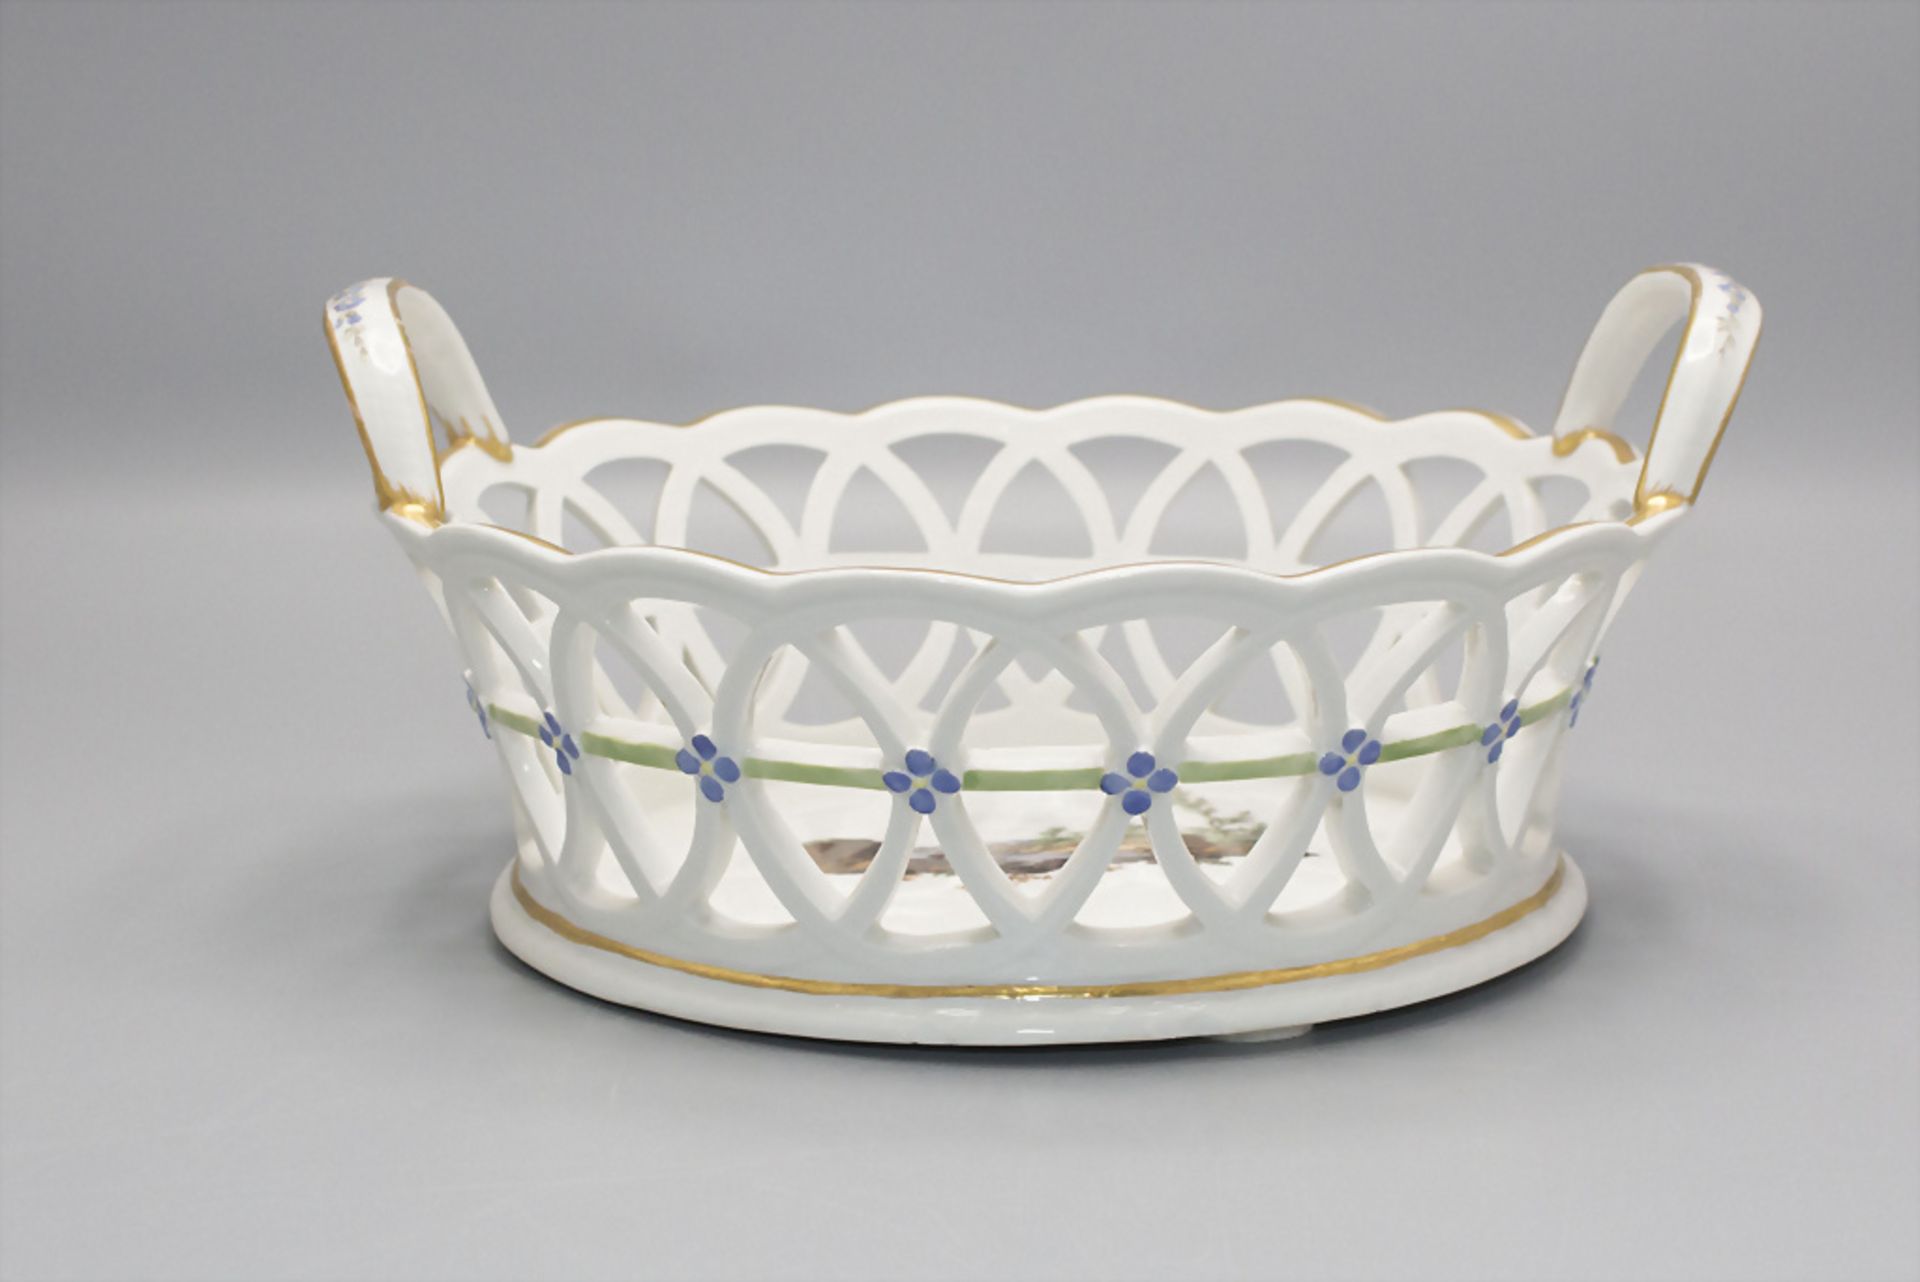 Porzellankorb / A porcelain basket, Fürstenberg, 18. Jh. - Image 4 of 4